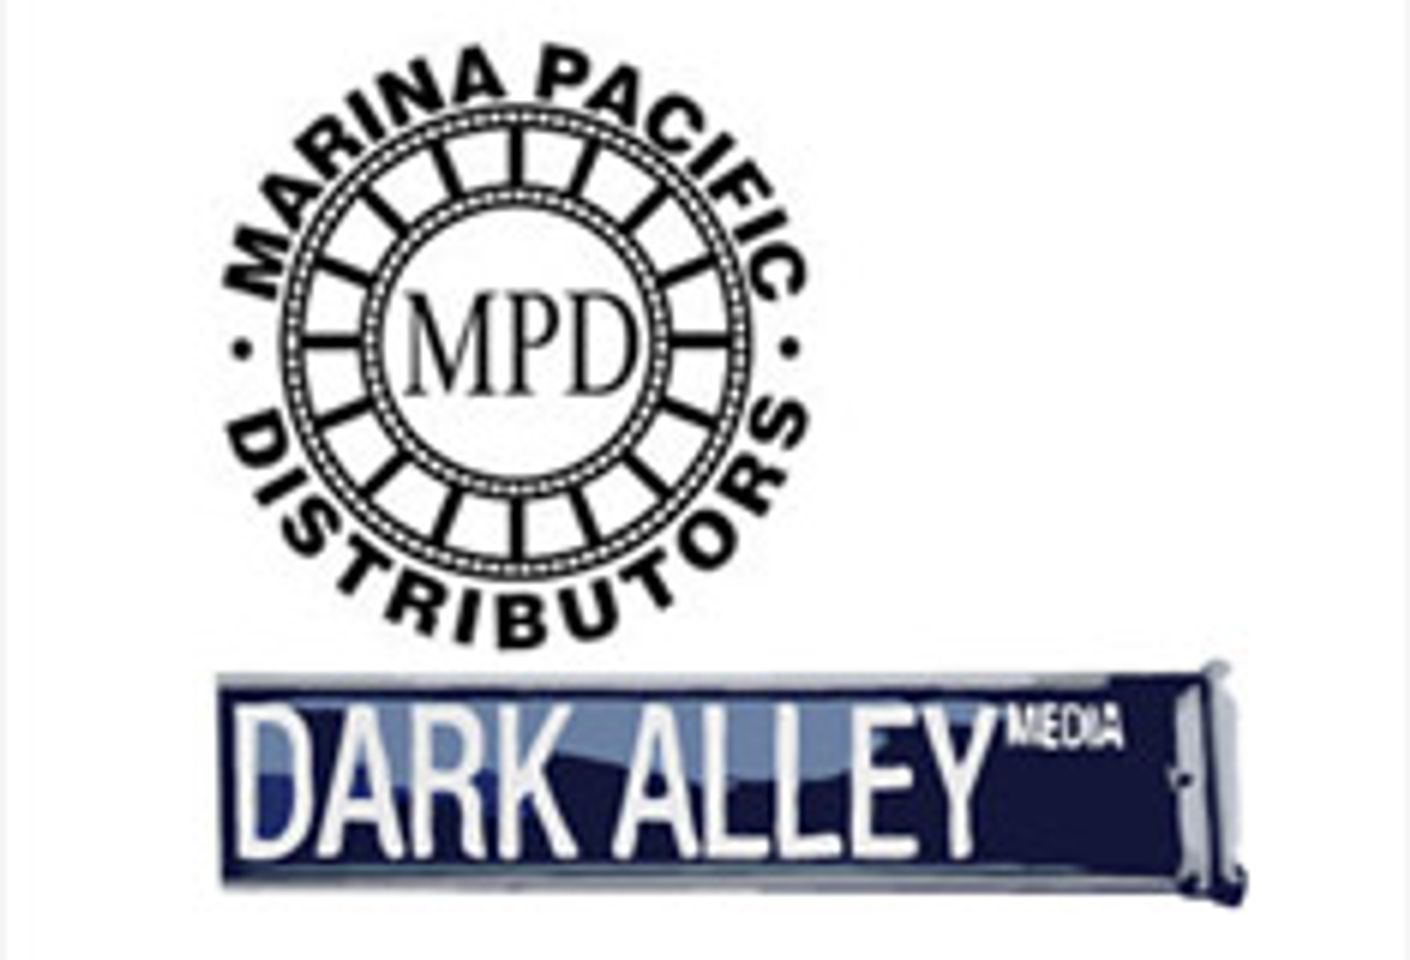 Marina Pacific to Distribute Dark Alley